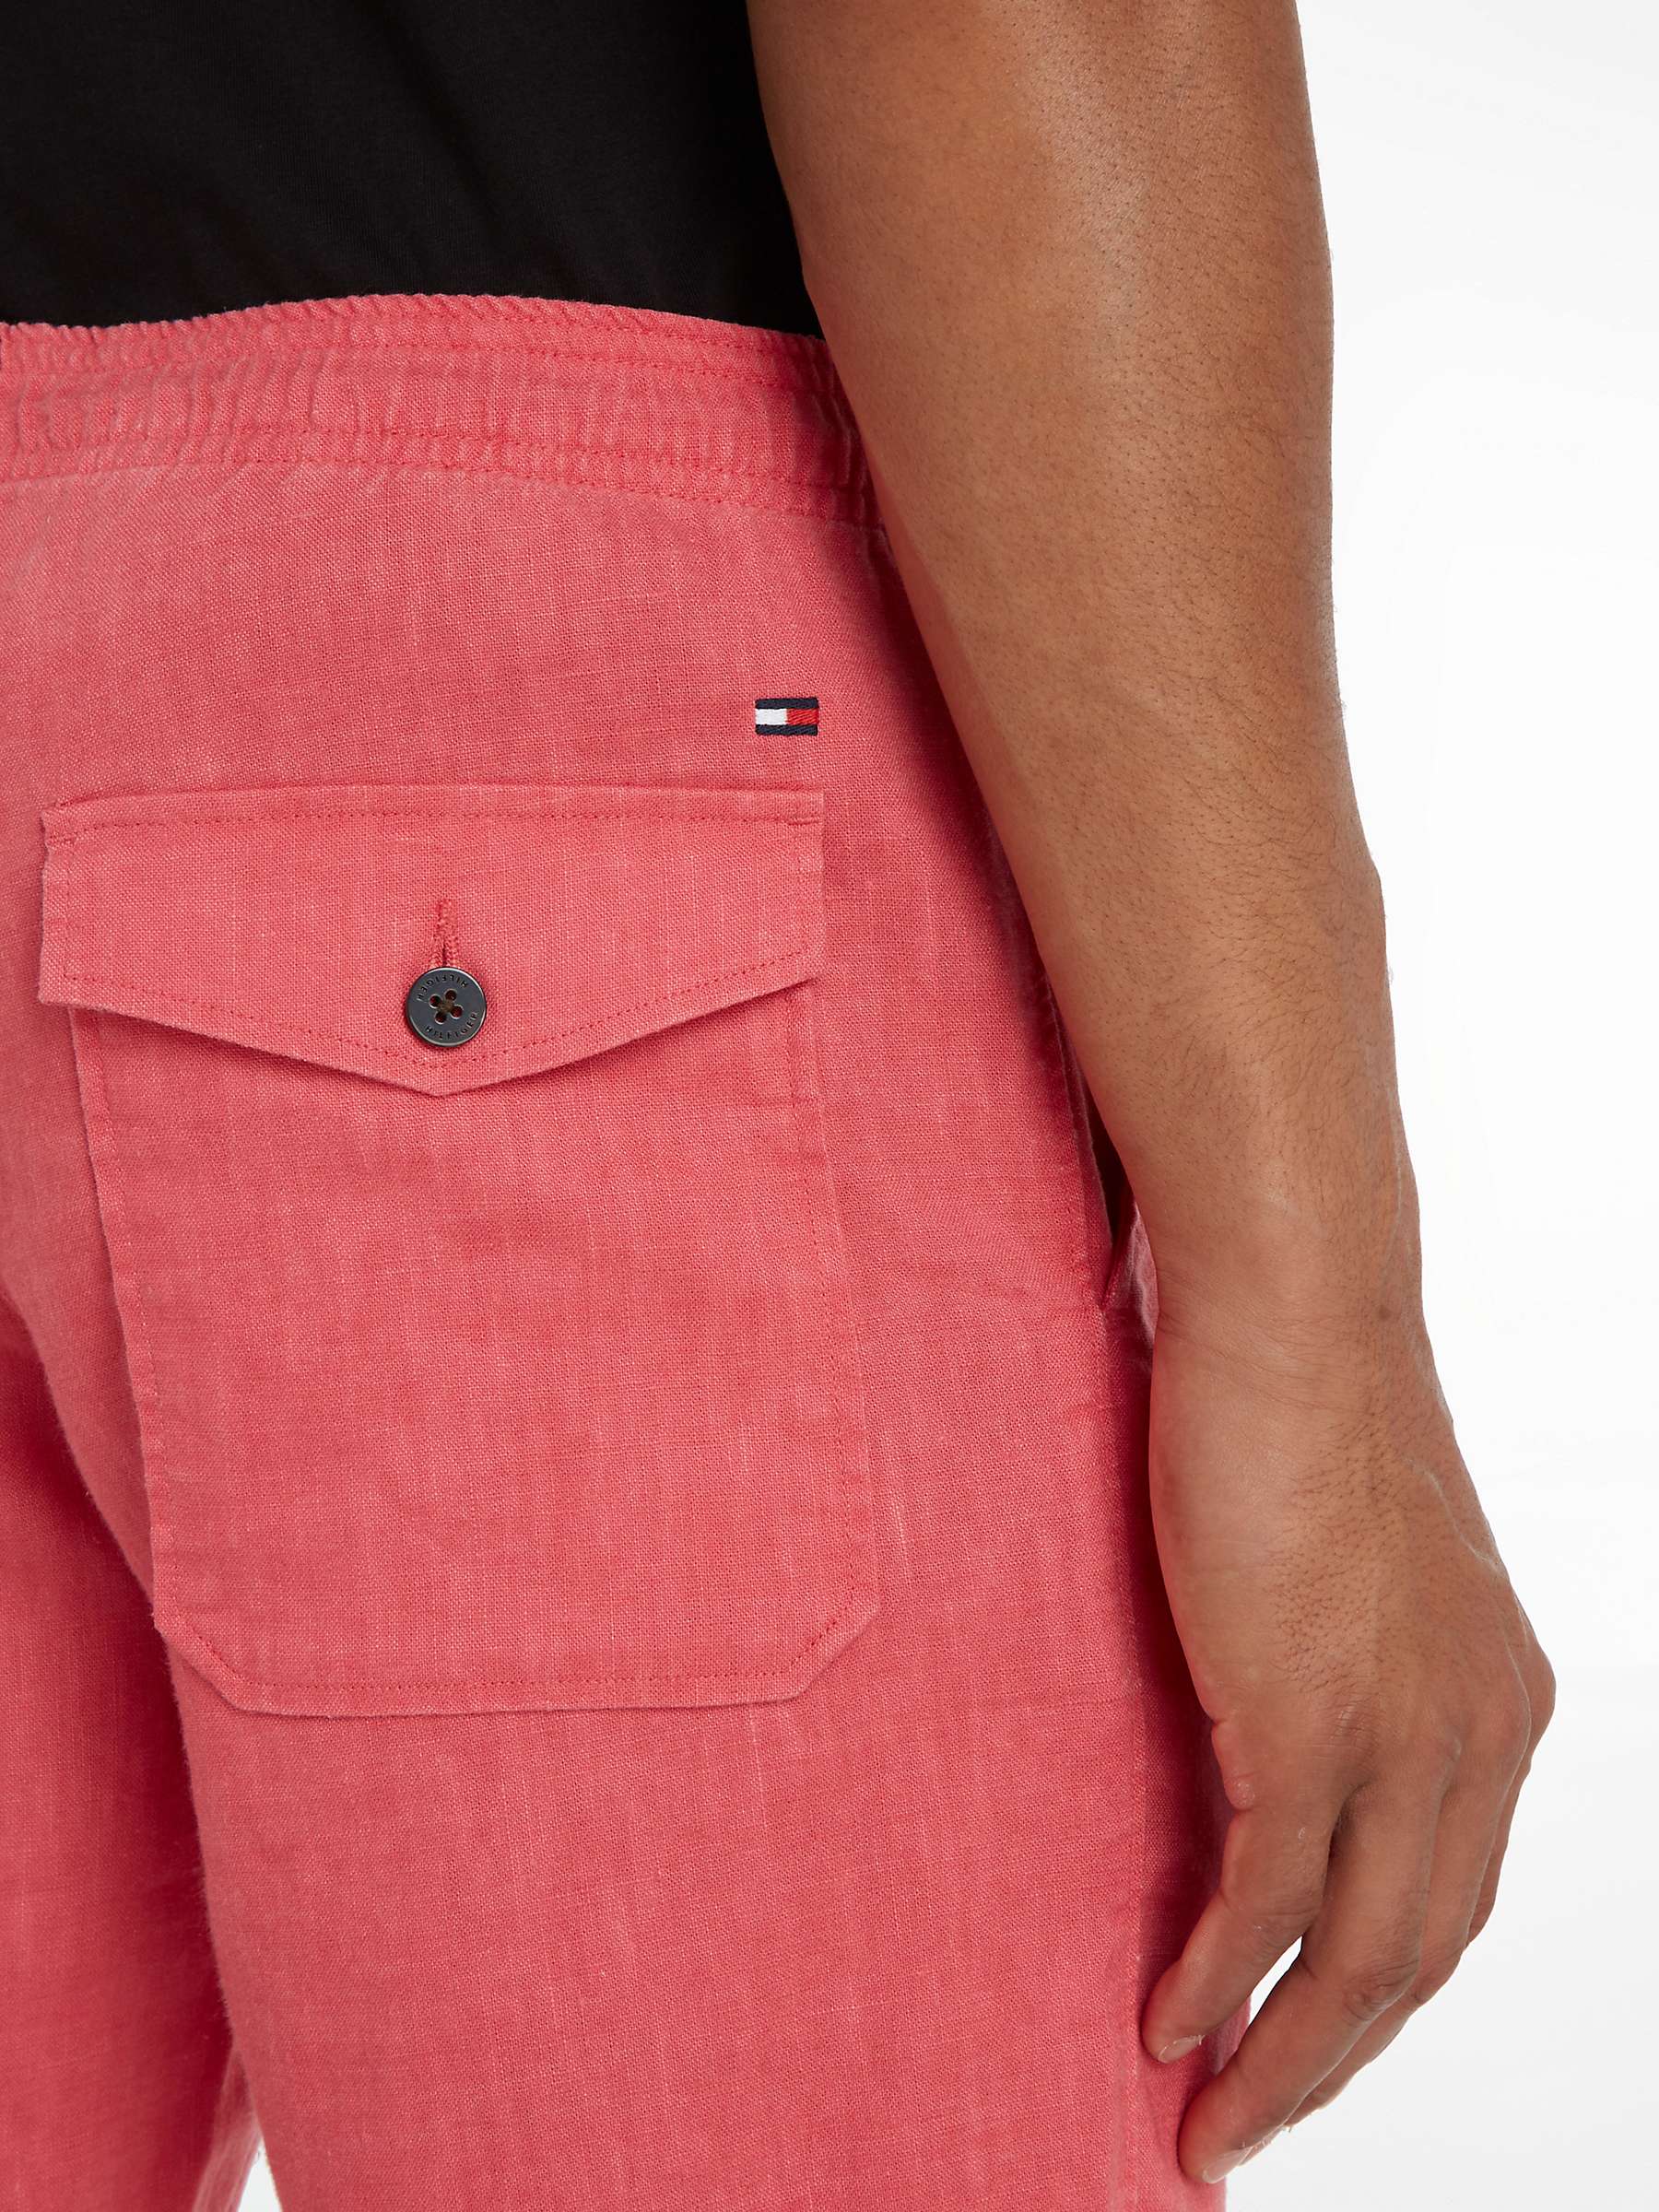 Buy Tommy Hilfiger Linen Shorts, Deep Crimson Fruit Online at johnlewis.com